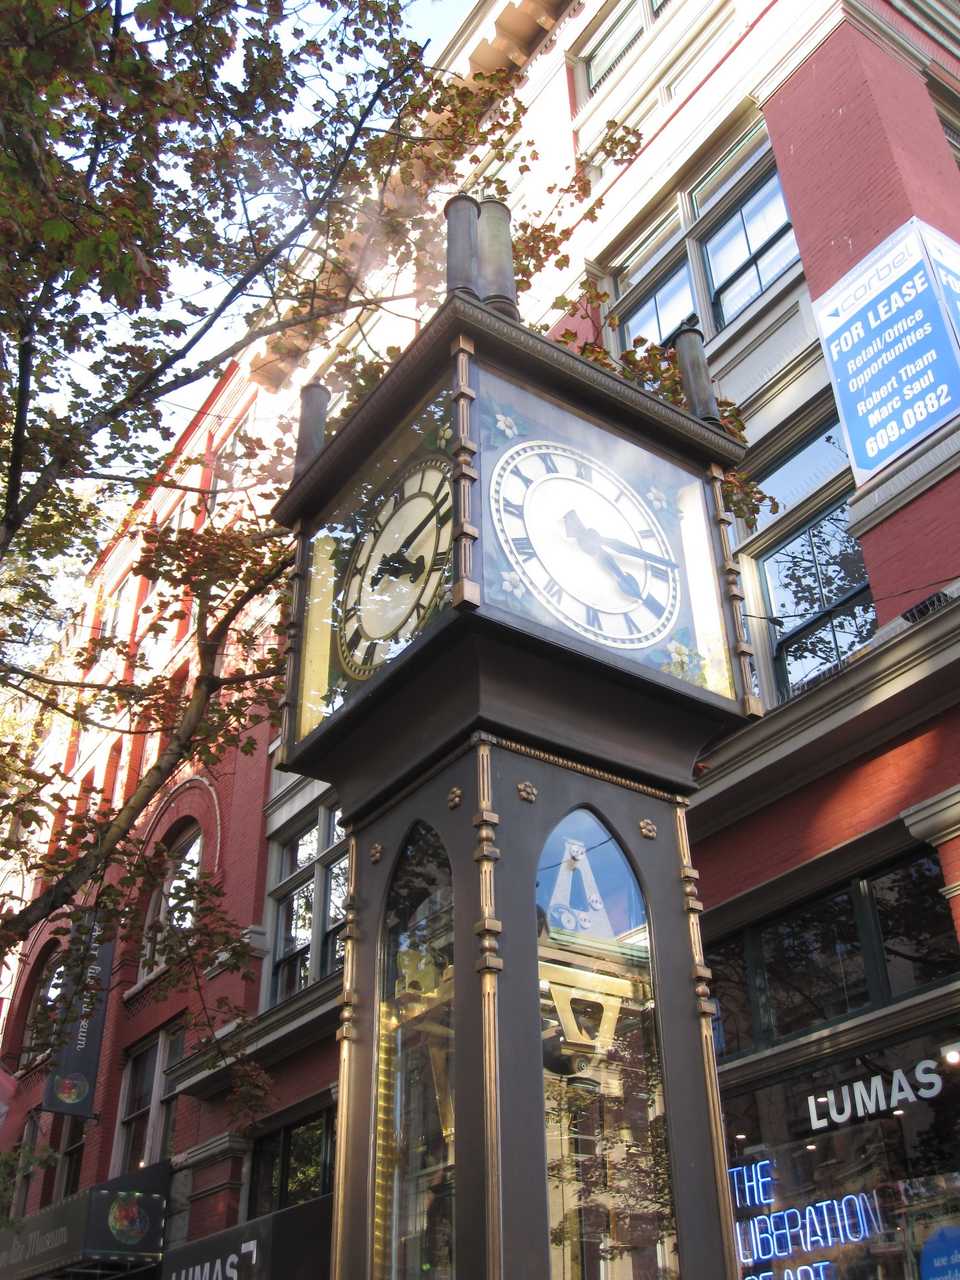 Dampfbetriebene Uhr in einer Fußgängerzone in Vancouver